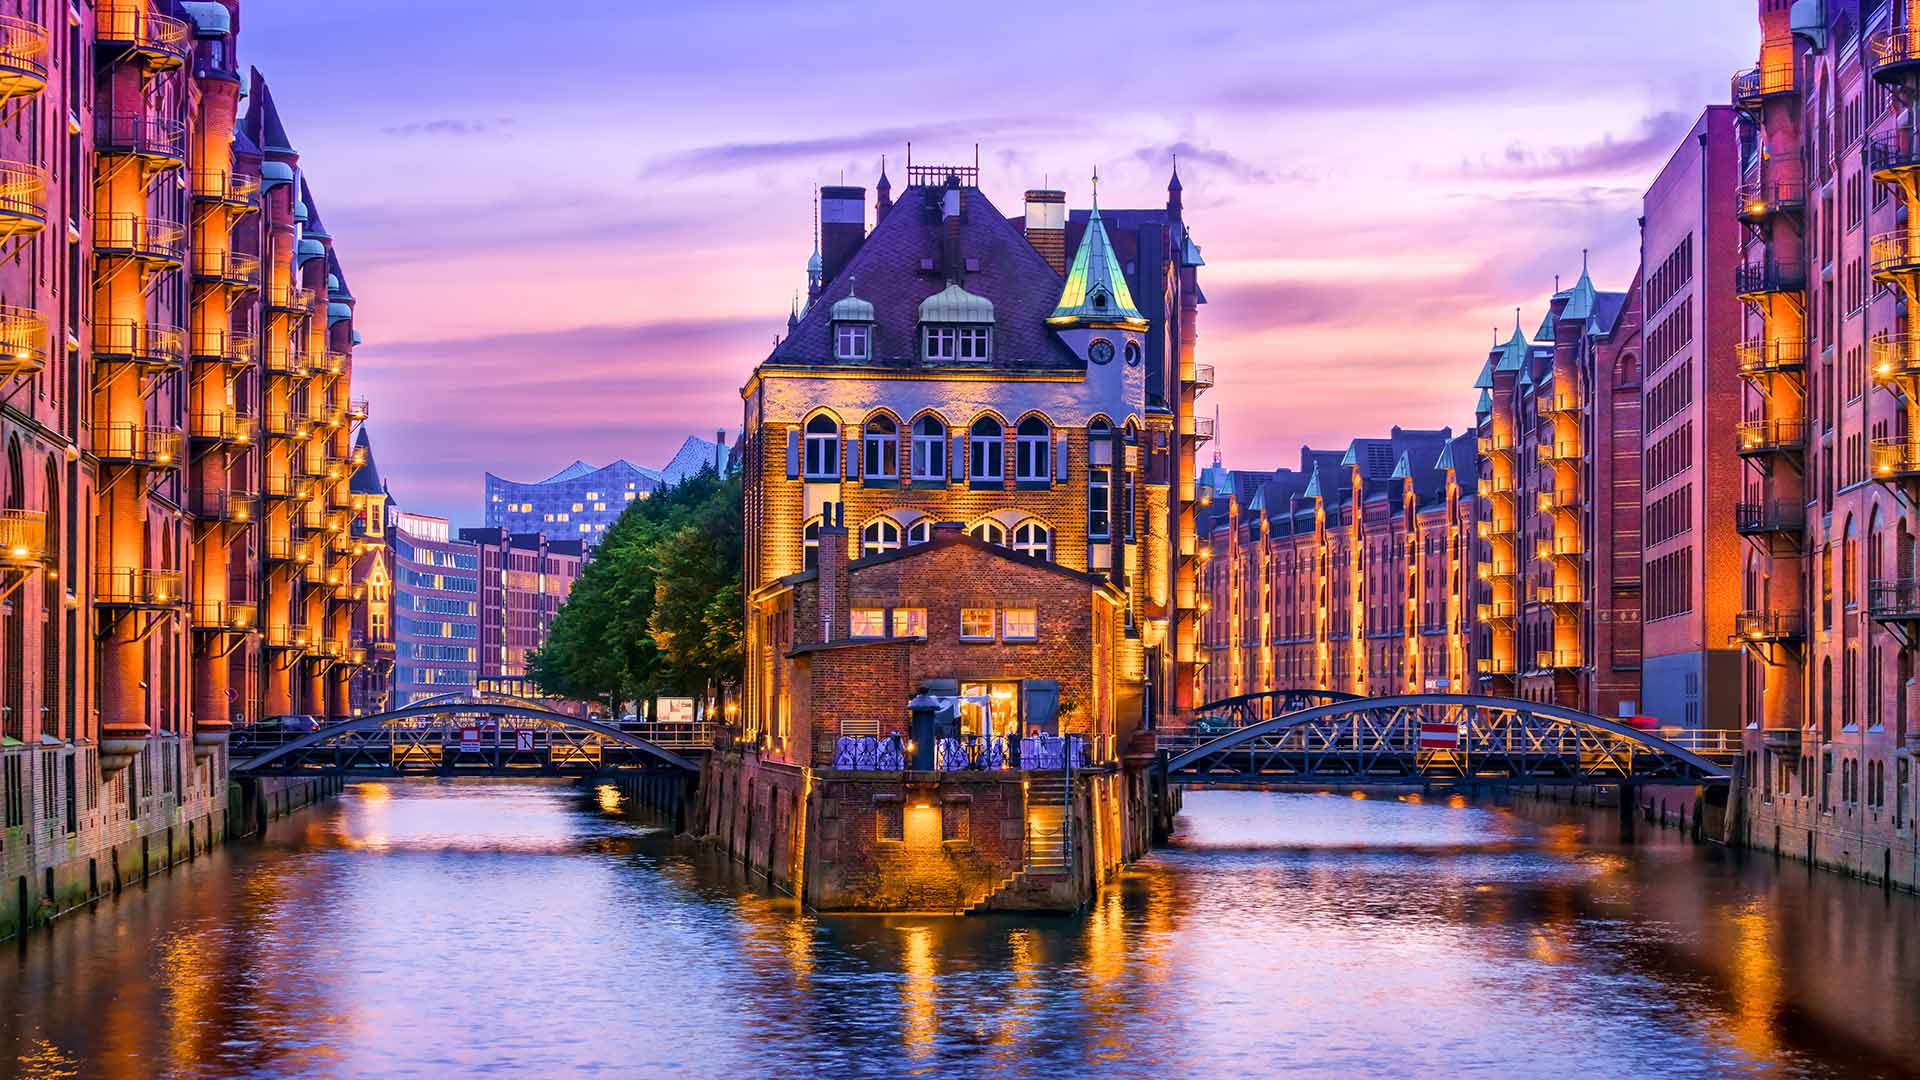 Hamburg, Germany Clean Air Cities Around the World